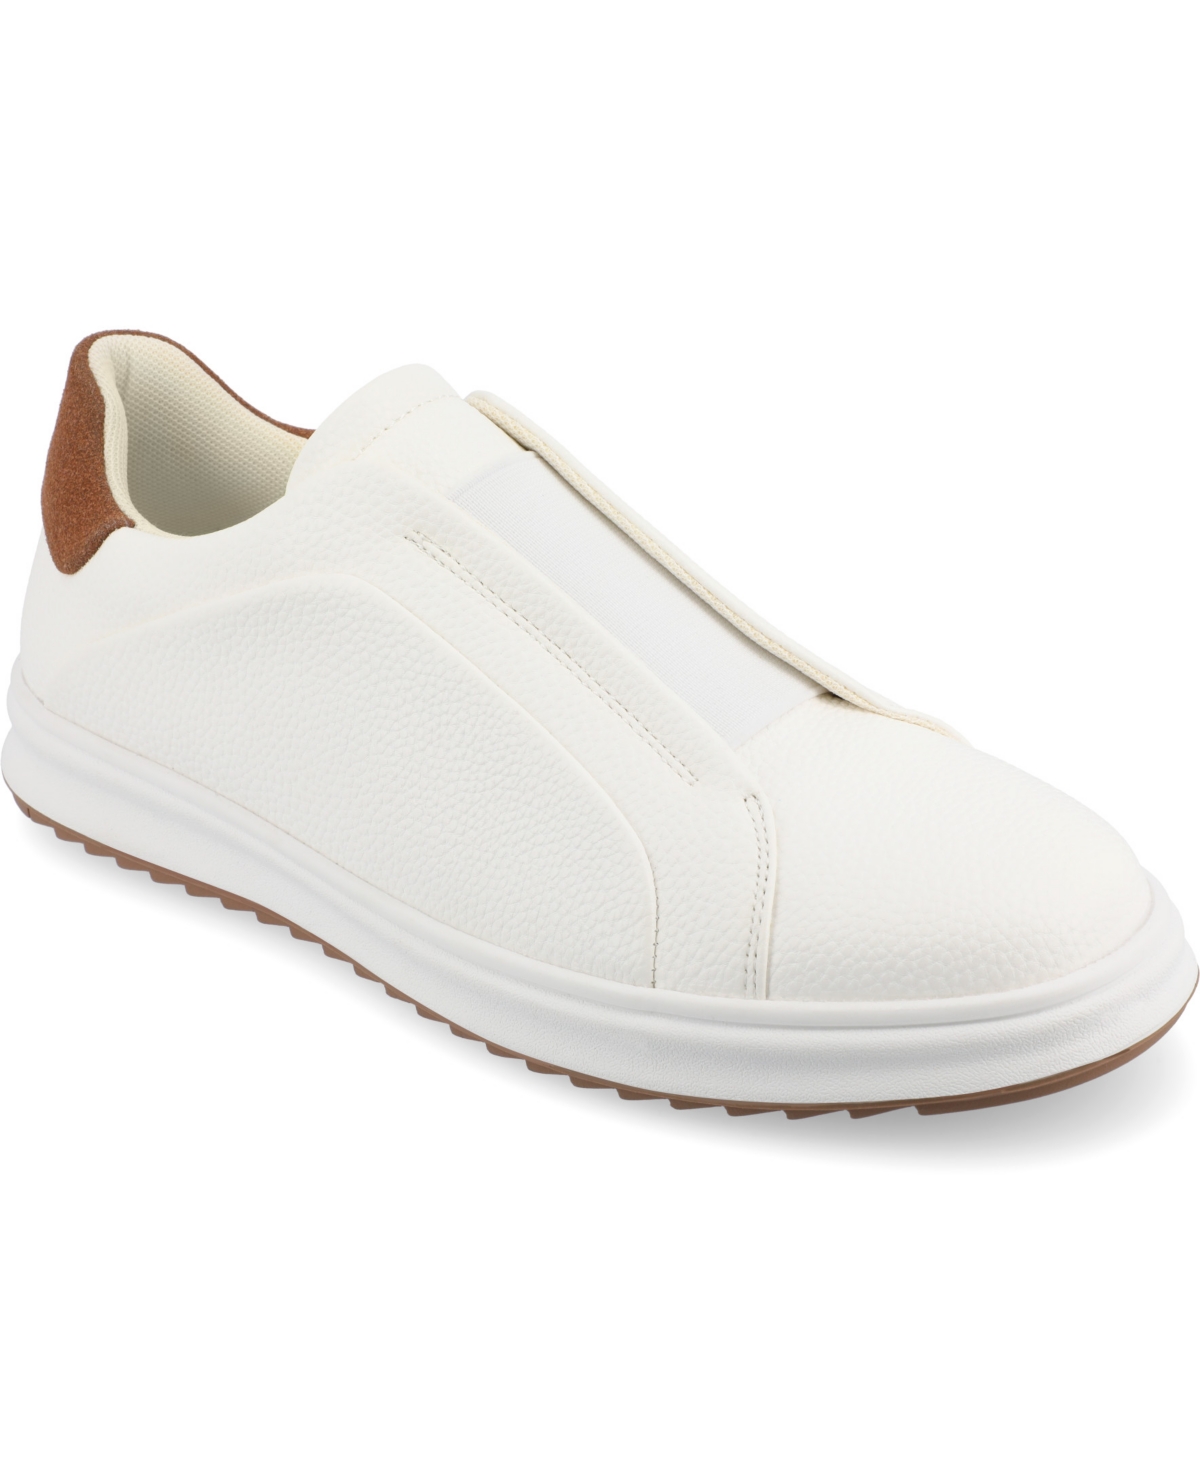 Men's Matteo Tru Comfort Foam Slip-On Sneakers - White